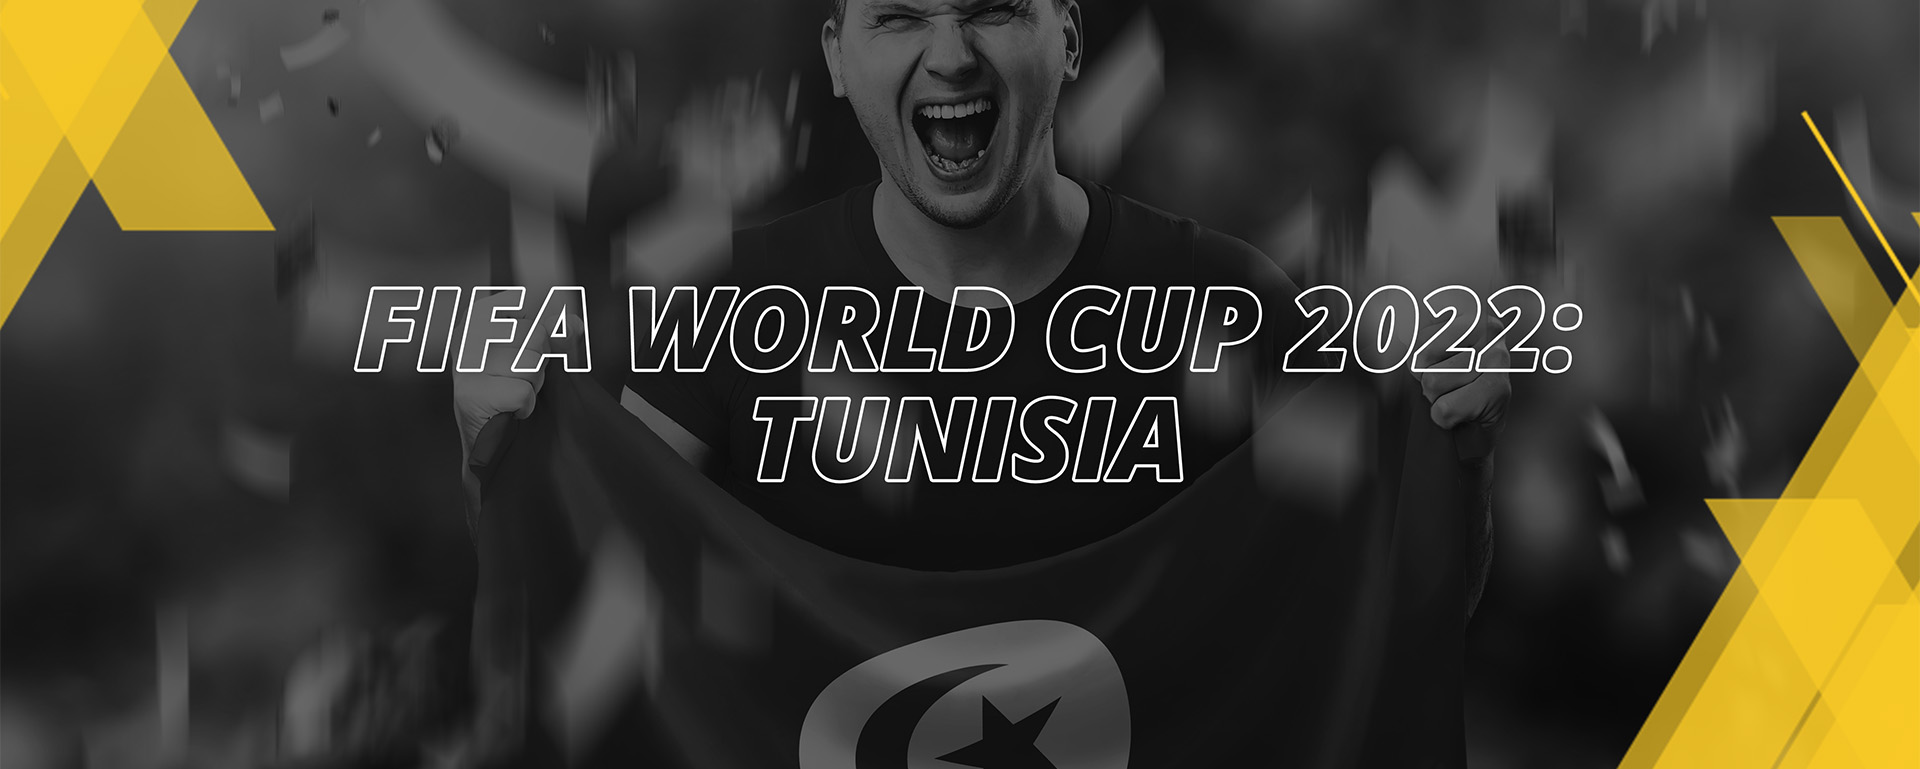 TUNISIA – FIFA WORLD CUP QATAR 2022 – FAN’S COMPENDIUM